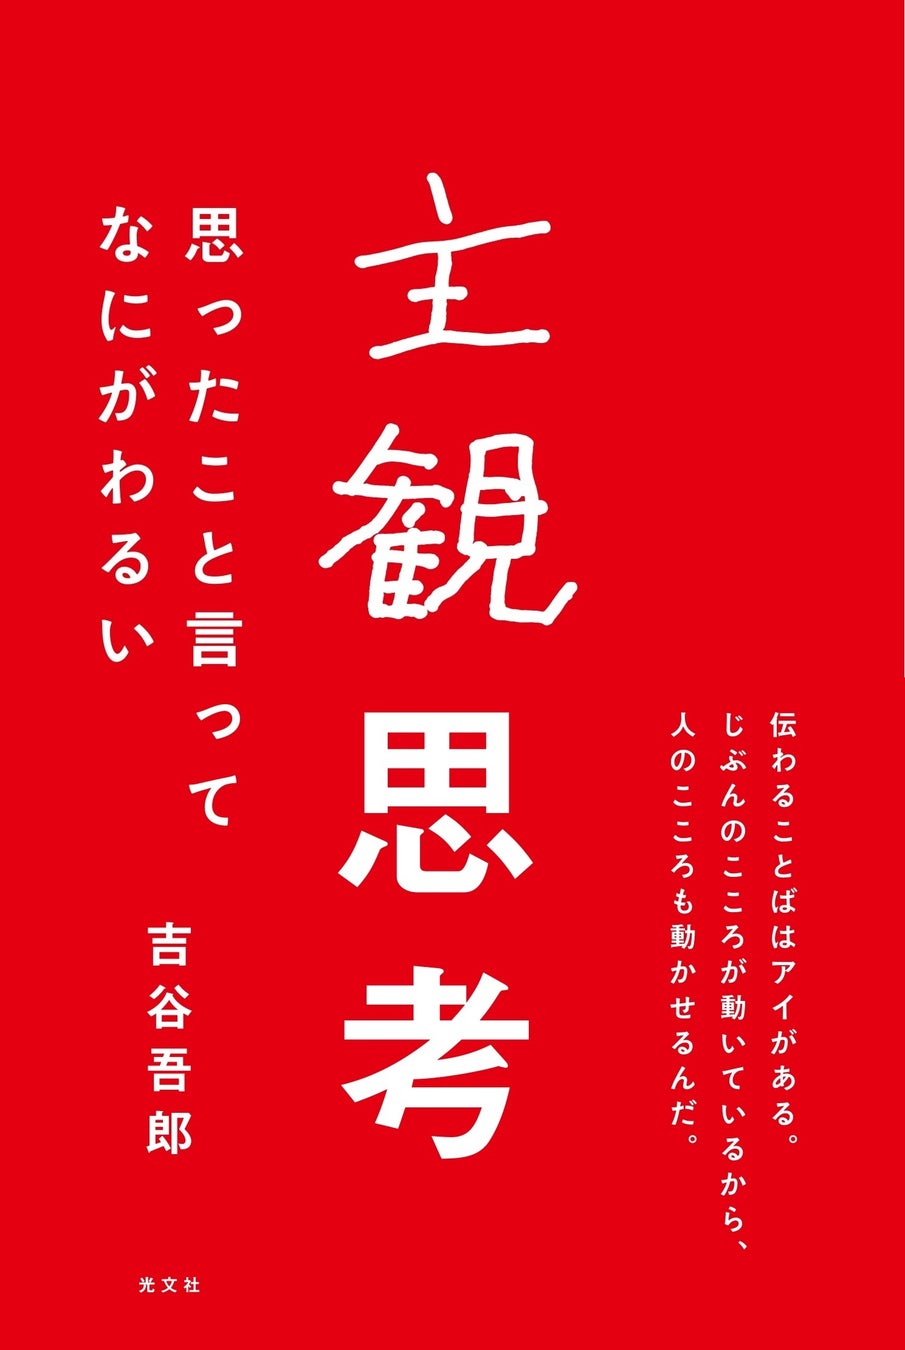 【ドジャース大谷選手グッズ】日本でも発売わずか48時間で、史上最高売上を達成！ーファナティクス・ジャパンー